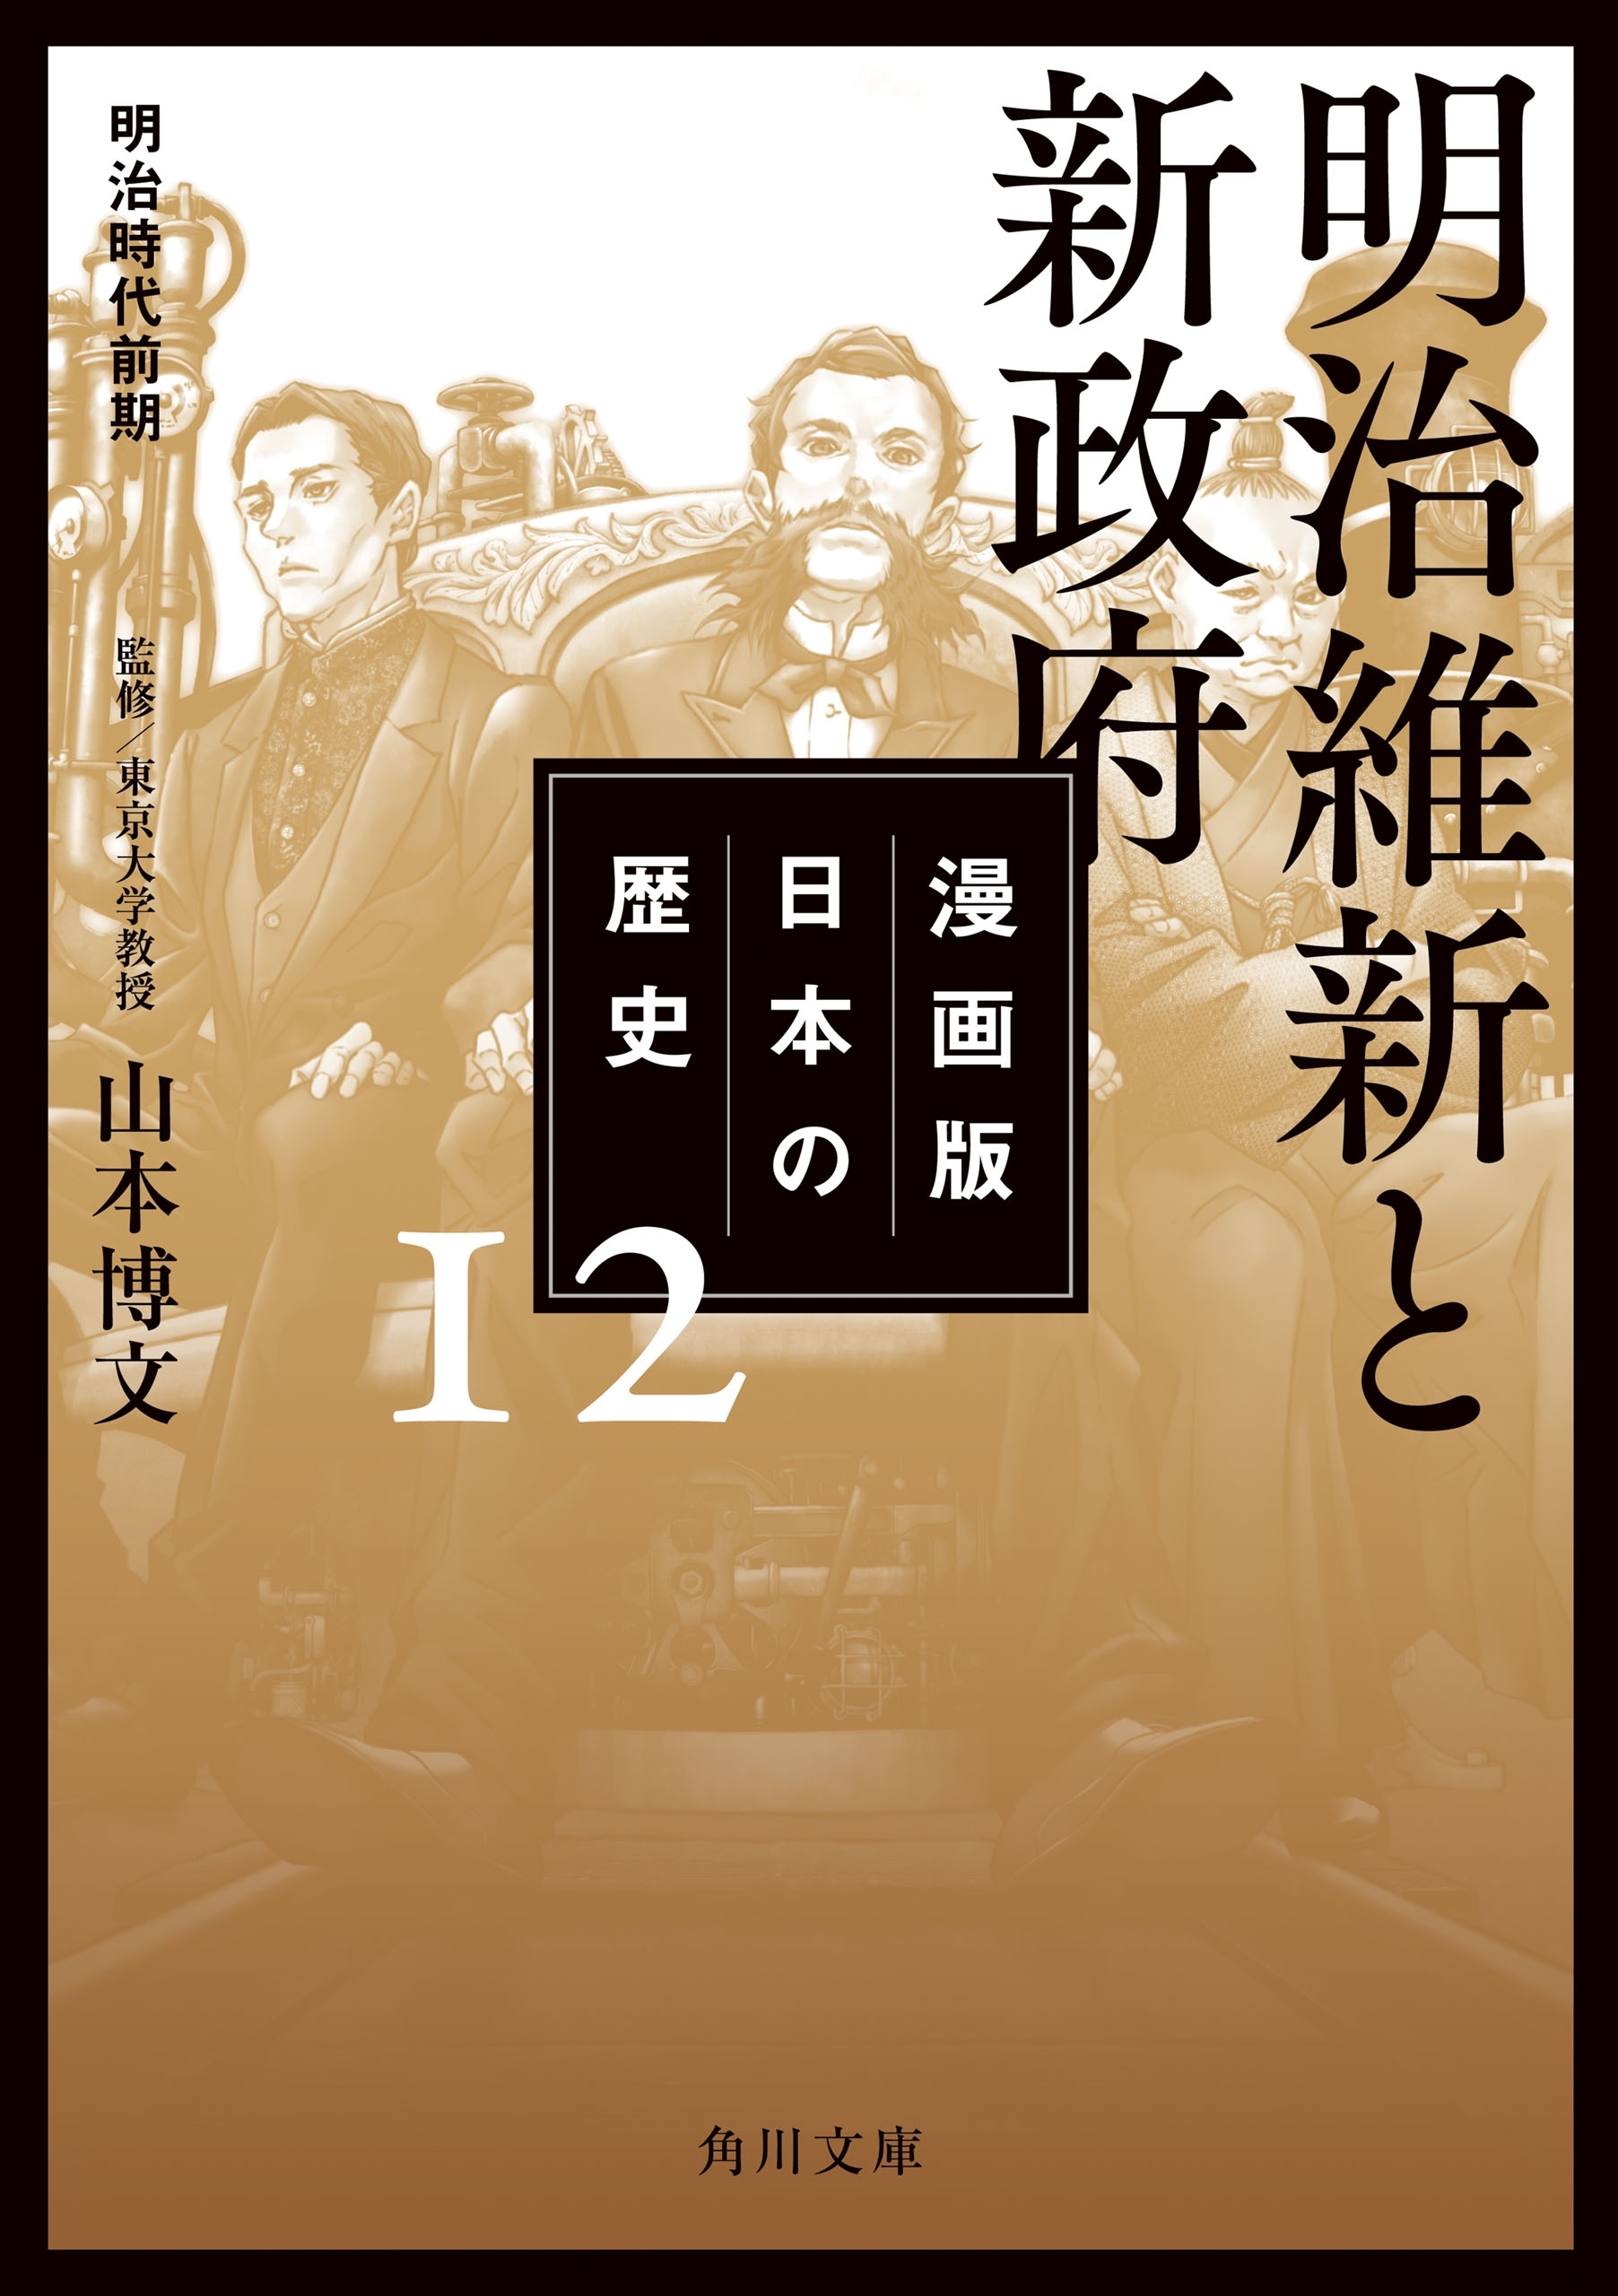 漫画版 日本の歴史 １２ 明治維新と新政府 明治時代前期 無料 試し読みなら Amebaマンガ 旧 読書のお時間です